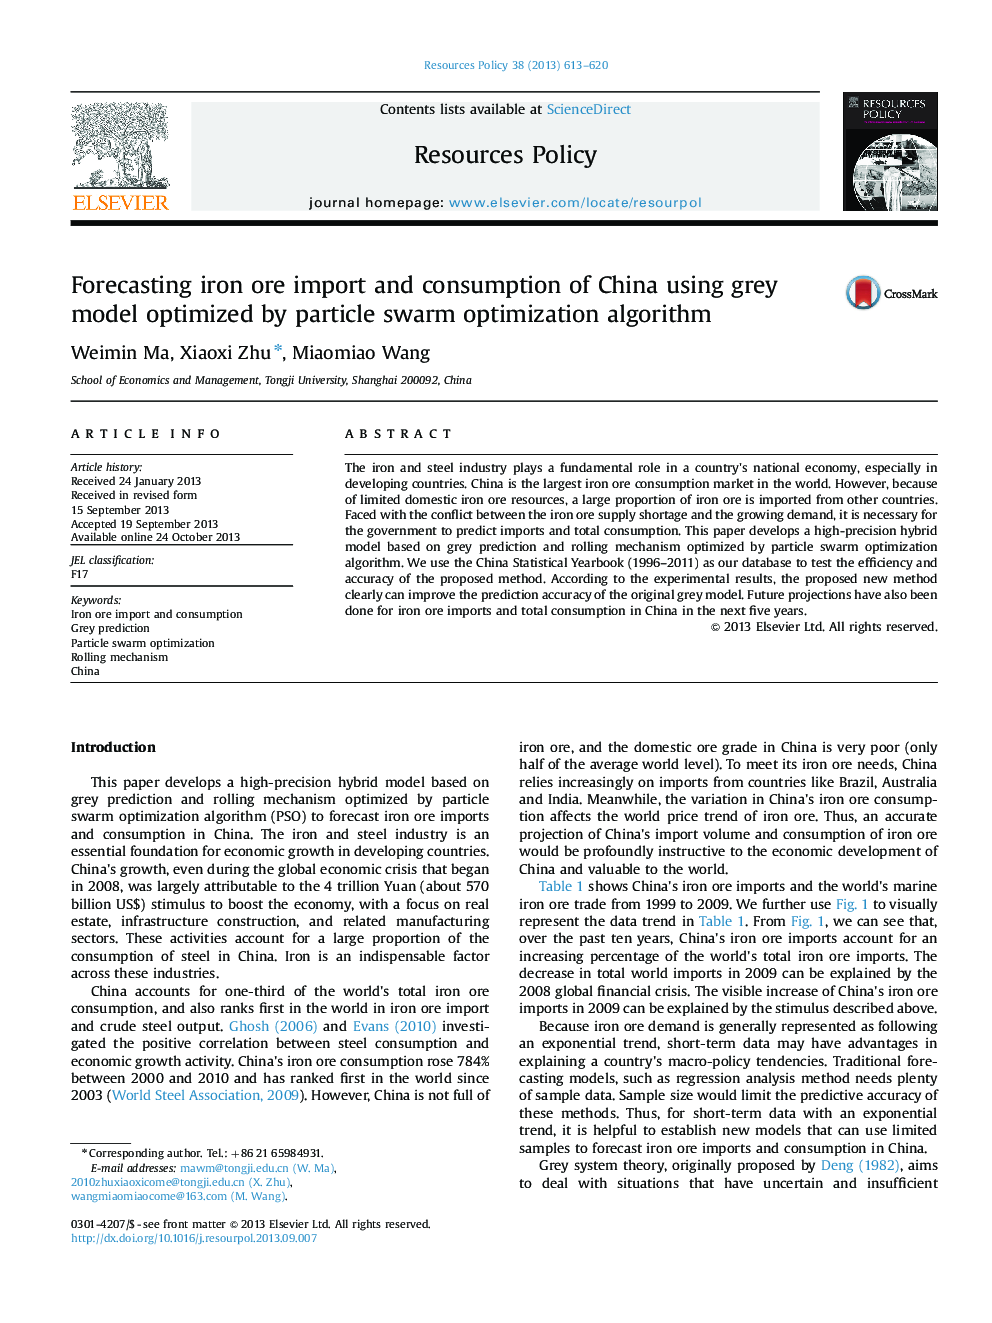 پیش بینی واردات سنگ معدن آهن و مصرف چین با استفاده از مدل خاکستری بهینه شده توسط الگوریتم بهینه سازی ذرات 